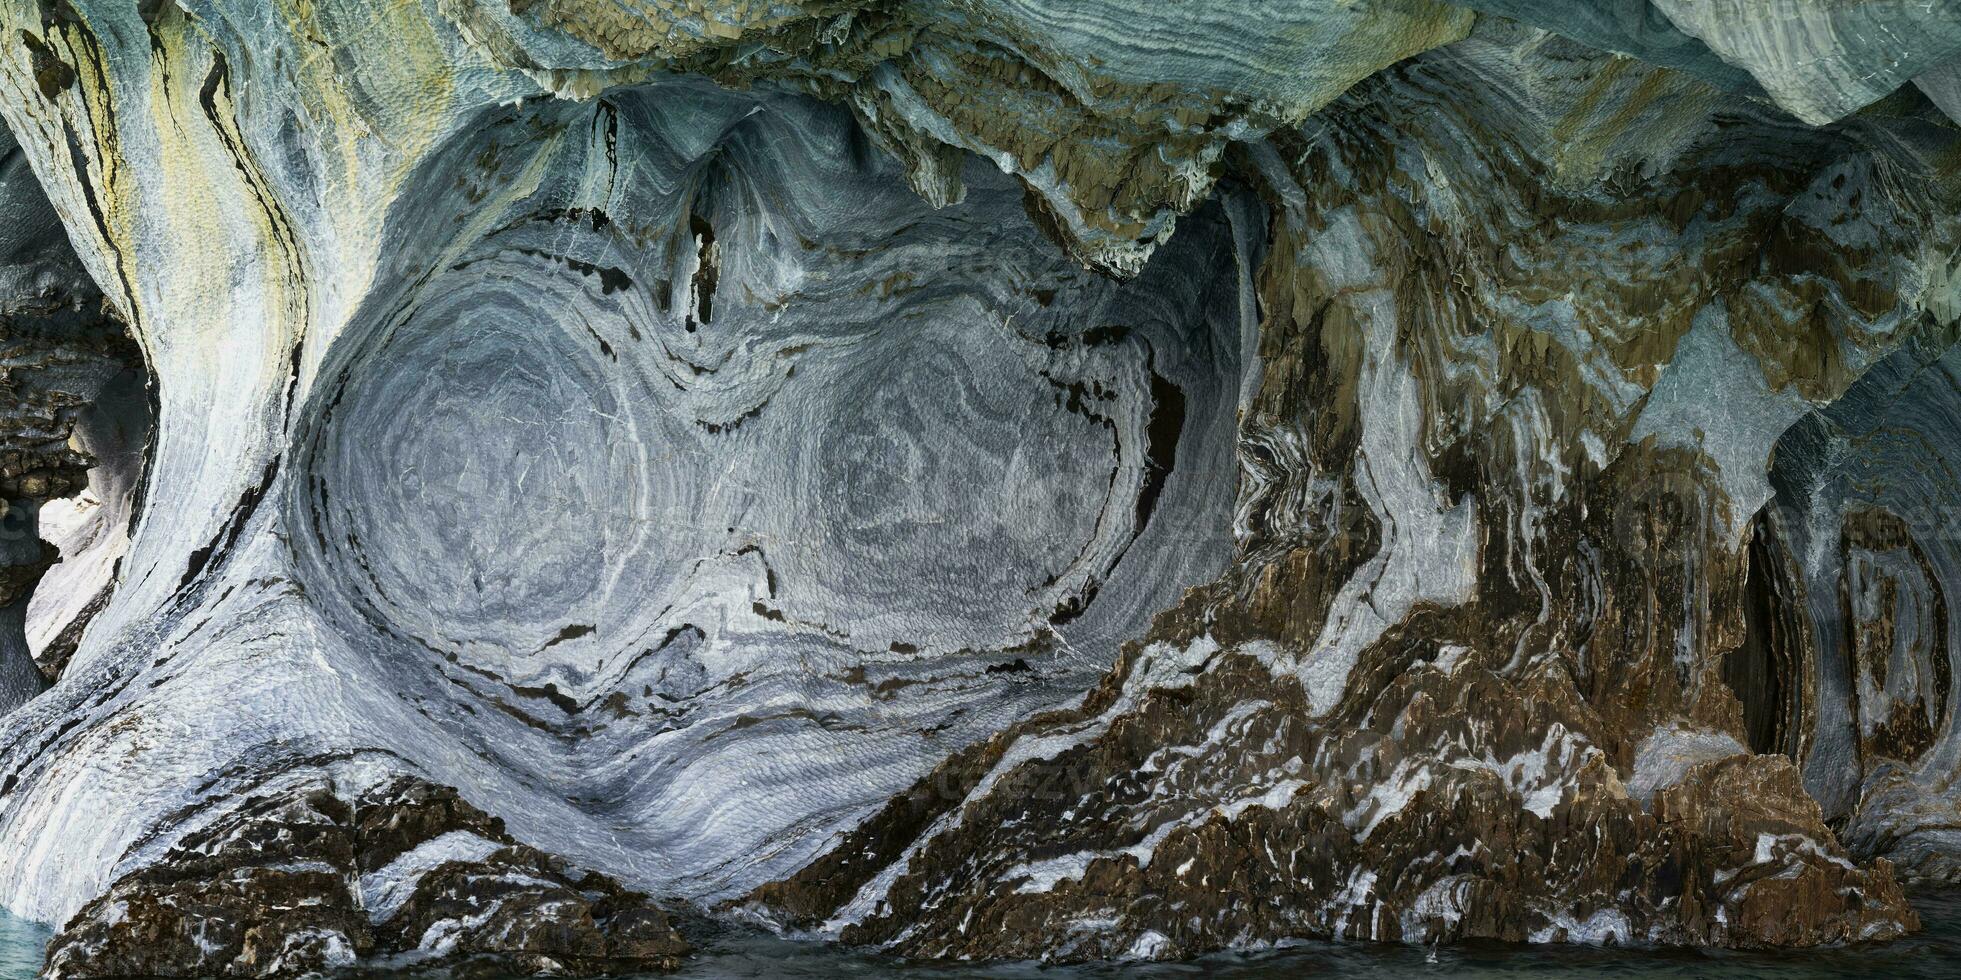 marmeren grotten heiligdom, vreemd rots formaties veroorzaakt door water erosie, algemeen carrera meer, puerto Rio rustig, aysen regio, Patagonië, Chili foto